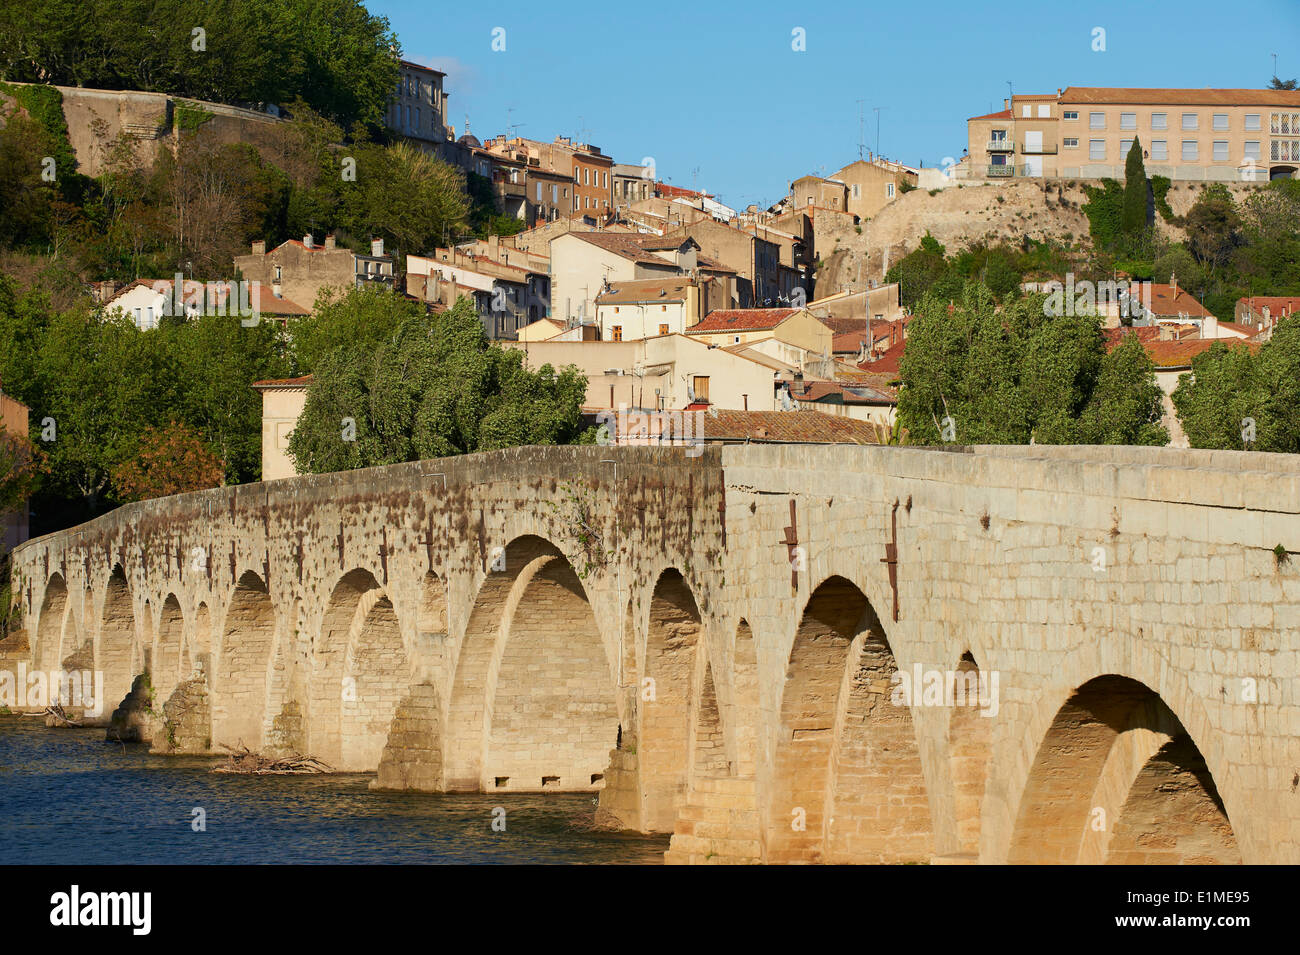 France, ministère de l'Hérault, Béziers, le vieux pont sur l'Orb Banque D'Images